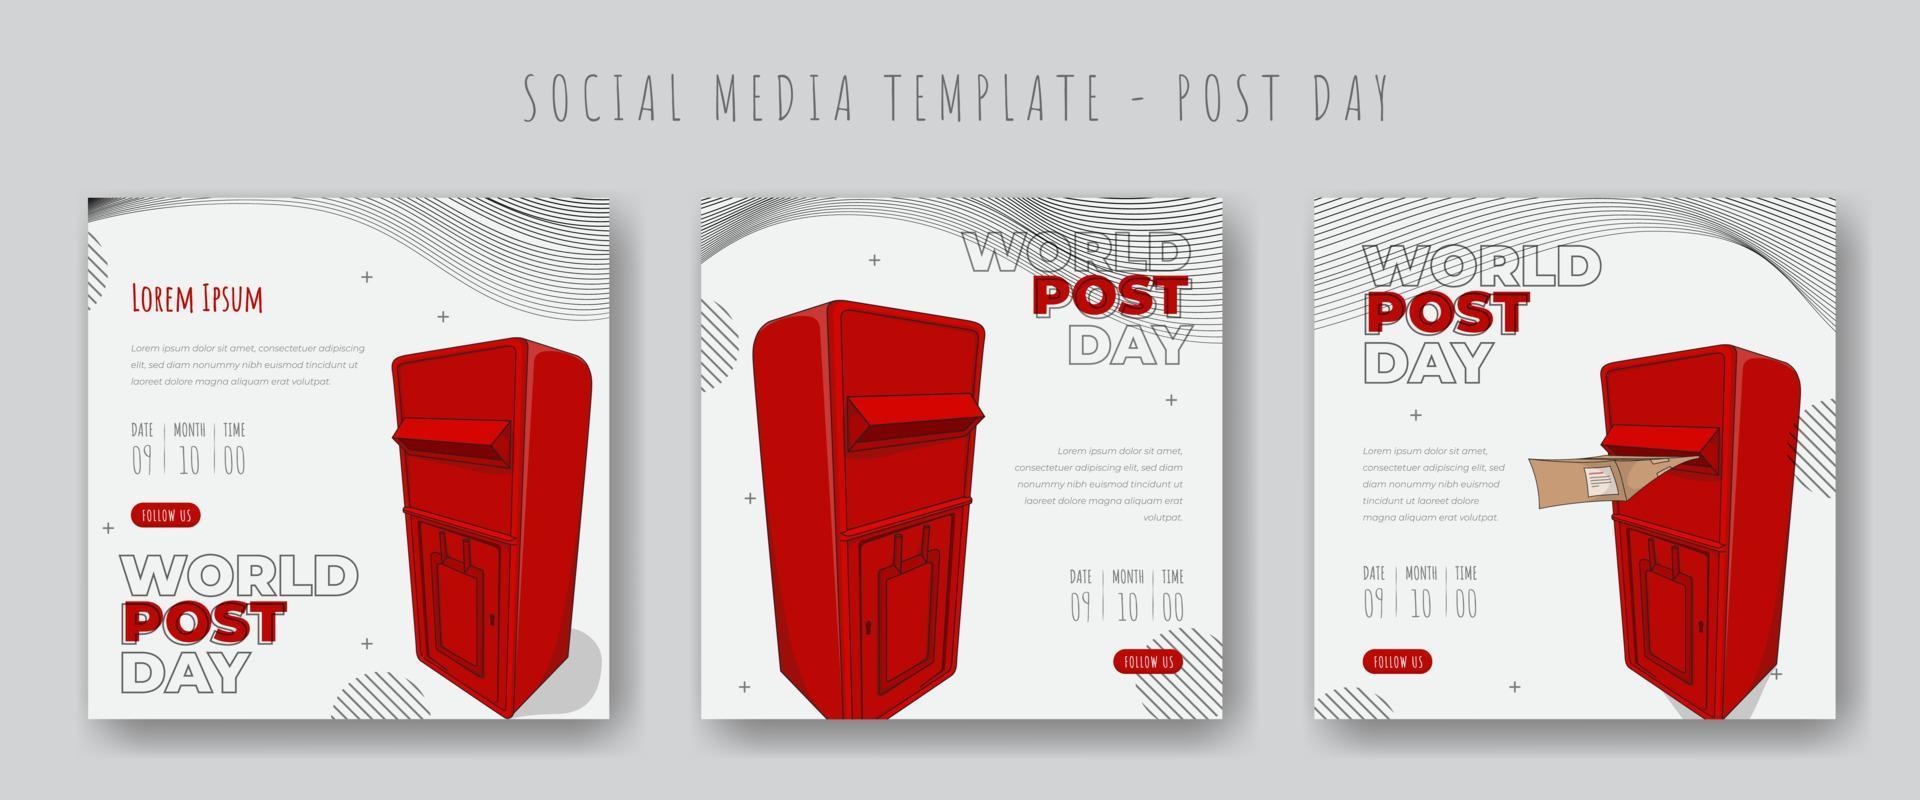 ensemble de publication sur les réseaux sociaux avec boîte aux lettres rouge et fond blanc pour la conception du modèle de la journée mondiale de la poste vecteur